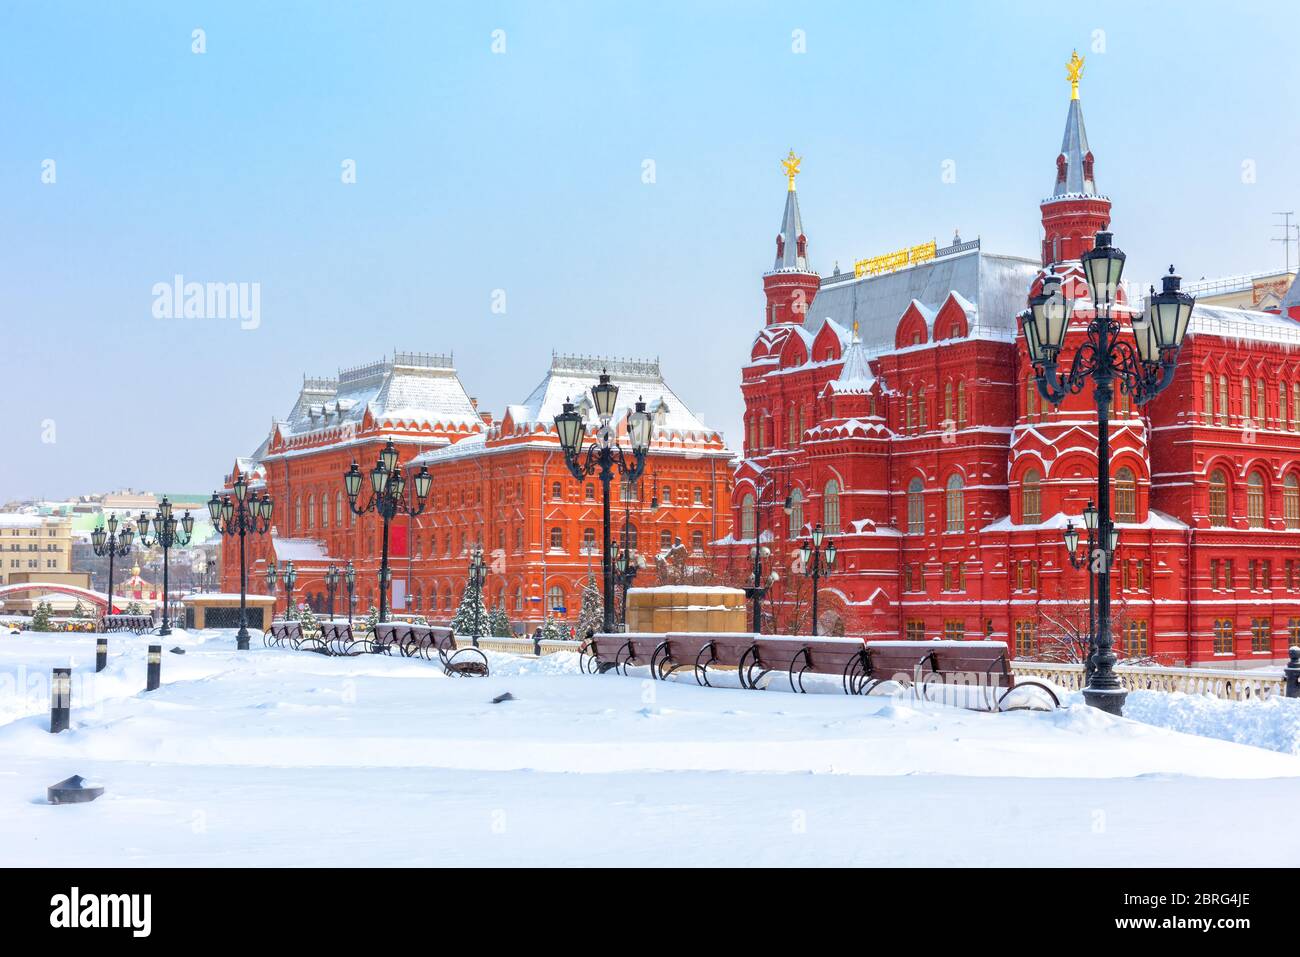 Moscou en hiver froid, Russie. Décor de vieux bâtiments historiques sur la place enneigée Manezhnaya près du Kremlin de Moscou. Vue panoramique sur le ci de Moscou Banque D'Images